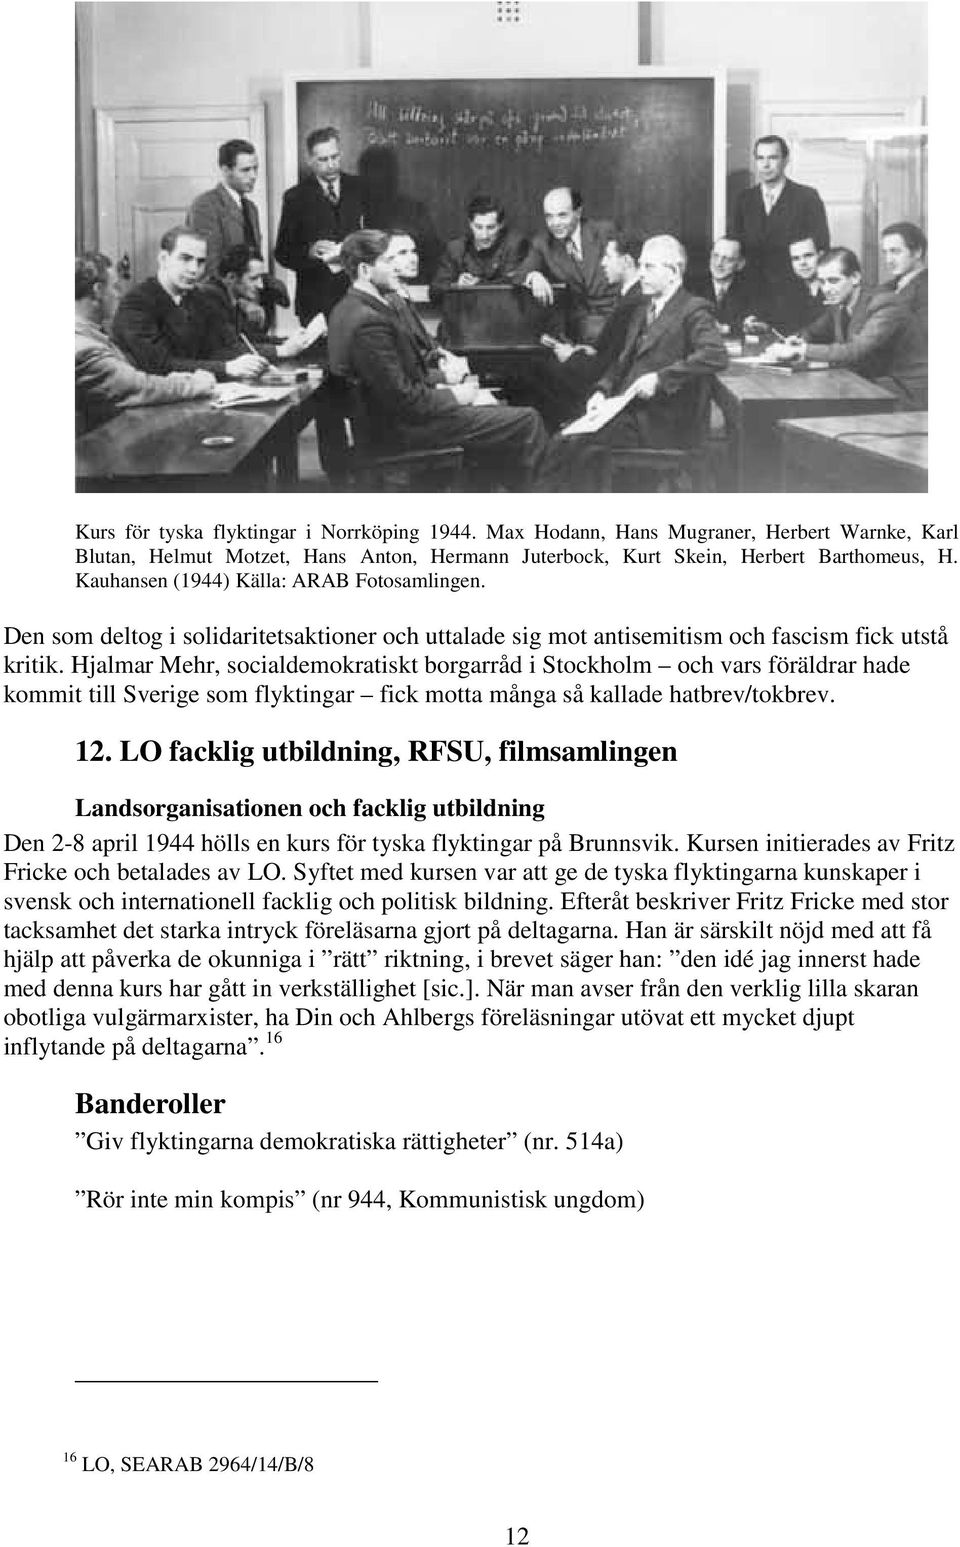 Hjalmar Mehr, socialdemokratiskt borgarråd i Stockholm och vars föräldrar hade kommit till Sverige som flyktingar fick motta många så kallade hatbrev/tokbrev. 12.